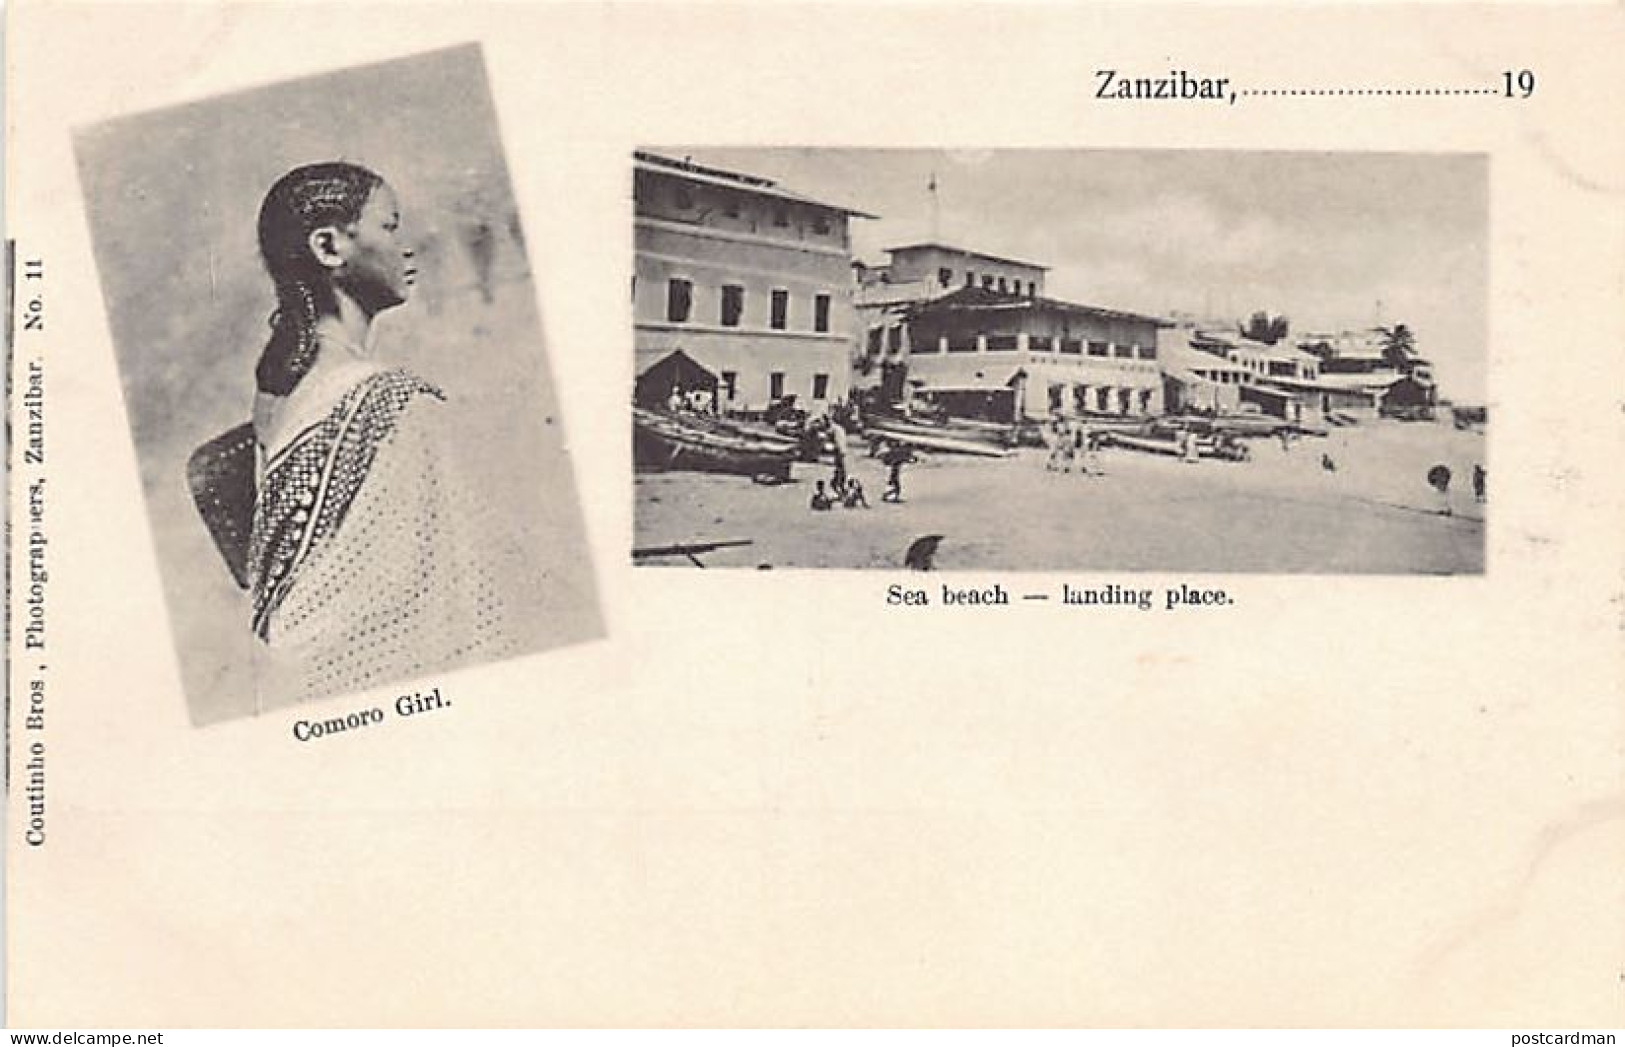 Zanzibar - Comoro Girl - Sea Beach - Landing Place - Publ. Coutinho Bros. 11 - Tanzanie